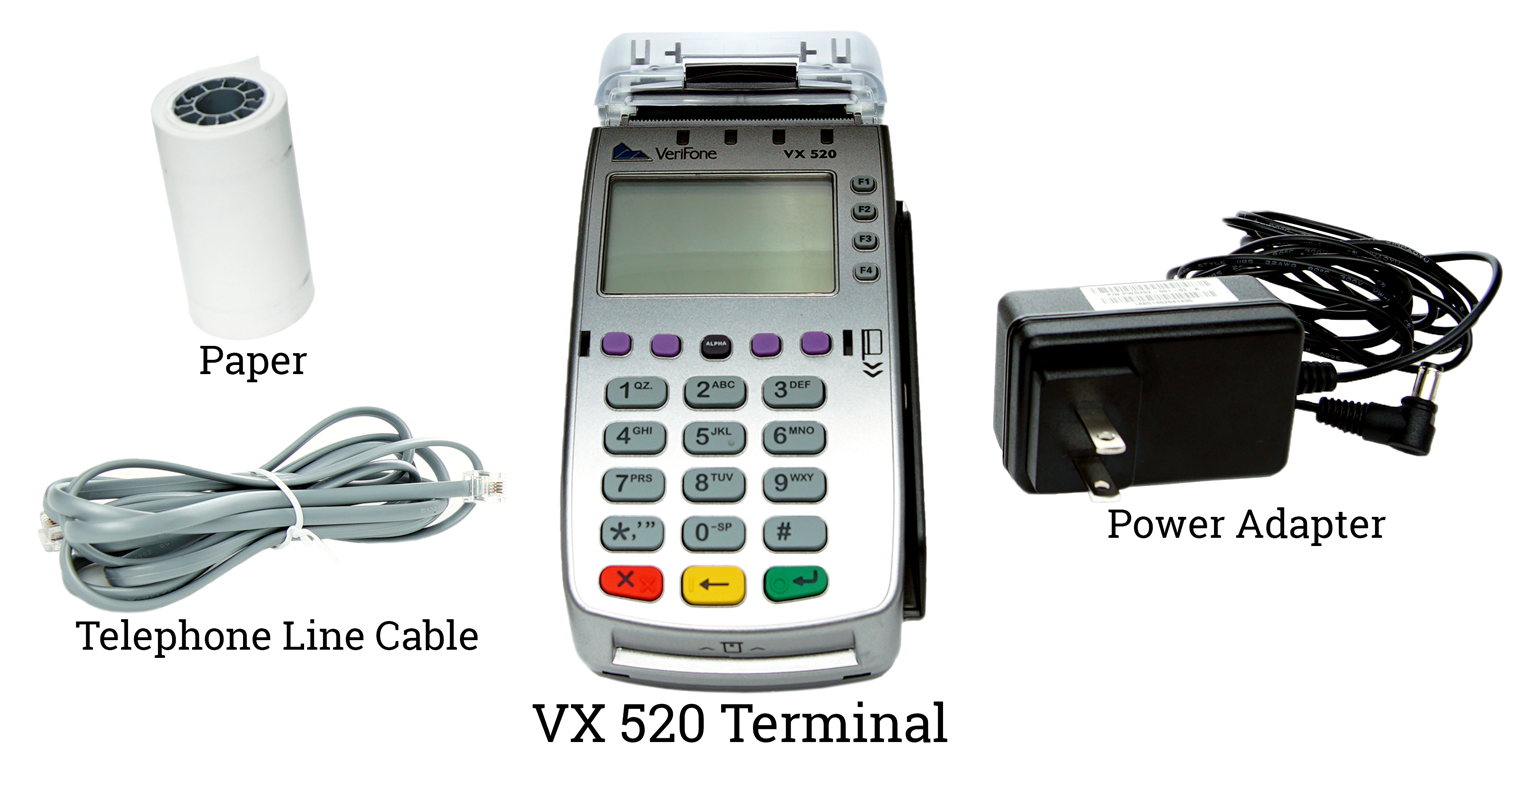 Verifone VX 520 Credit Card Terminal Setup | Lightspeed S-Series Support